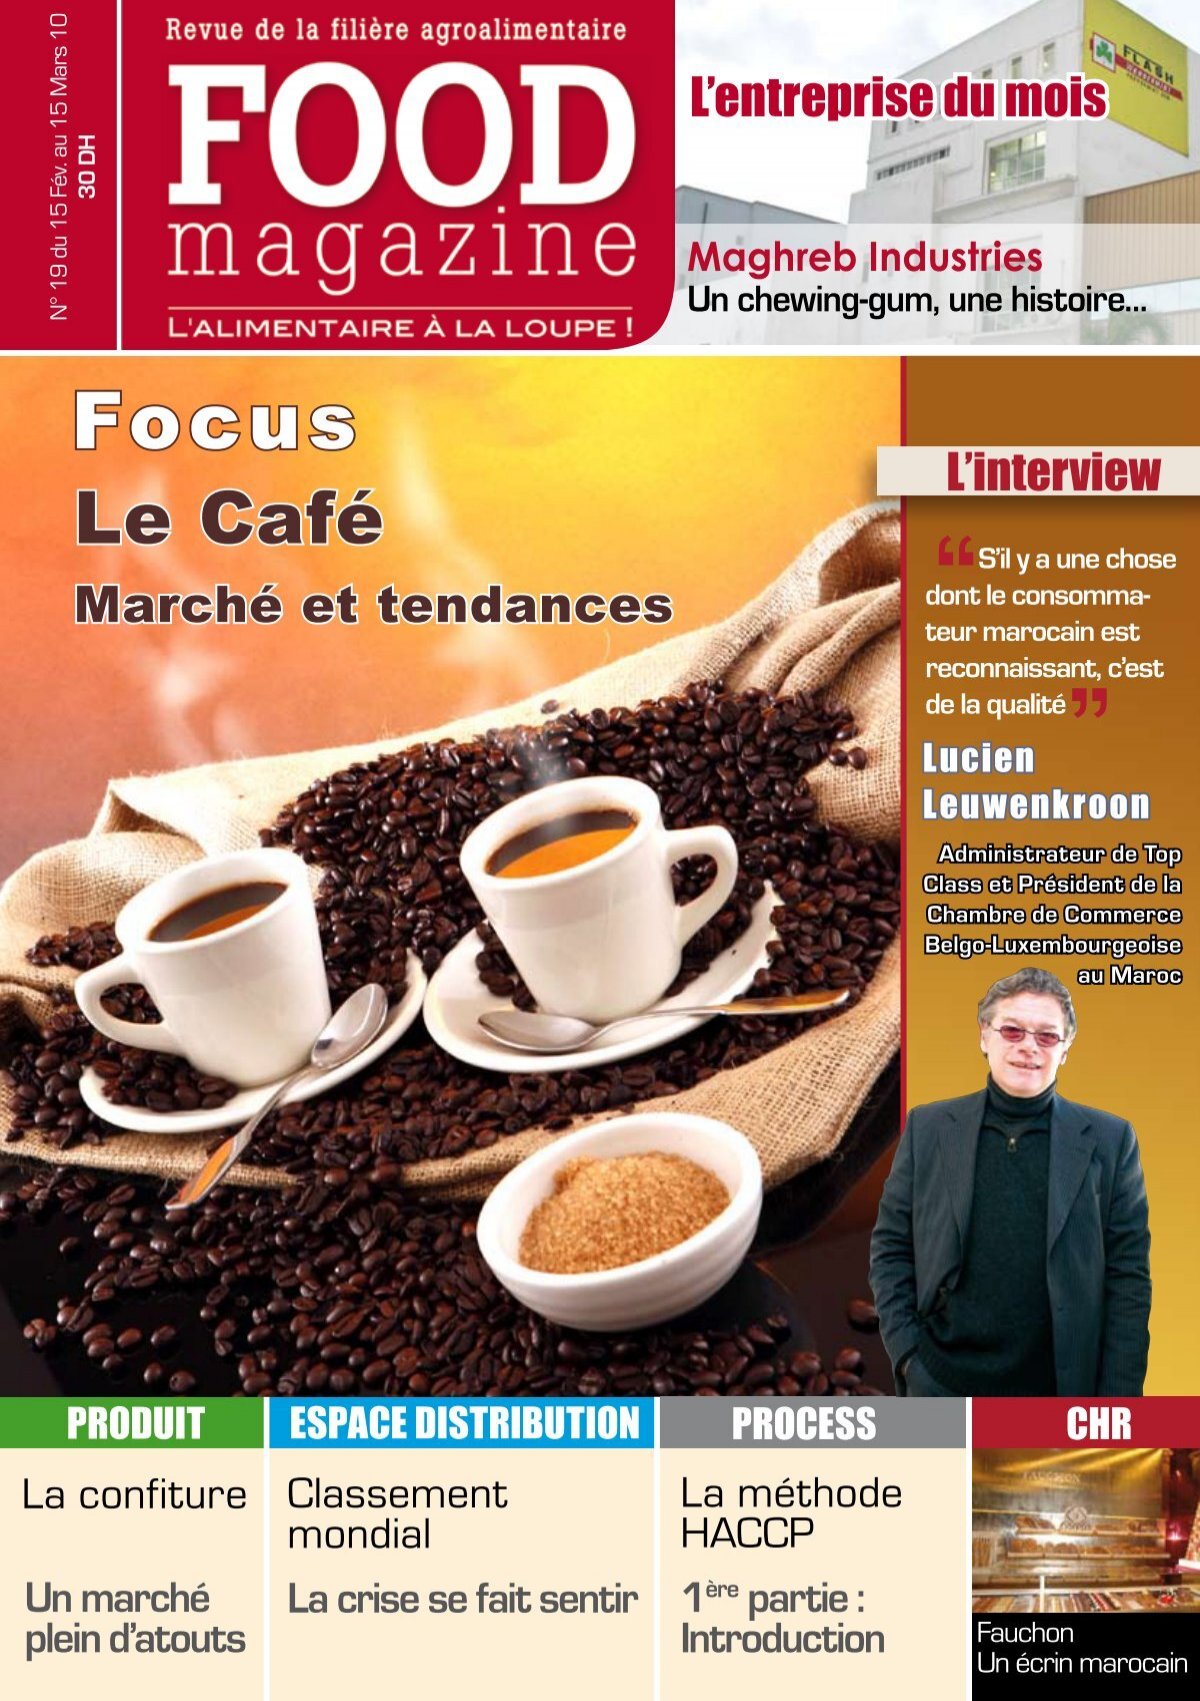 Le Café - FOOD MAGAZINE